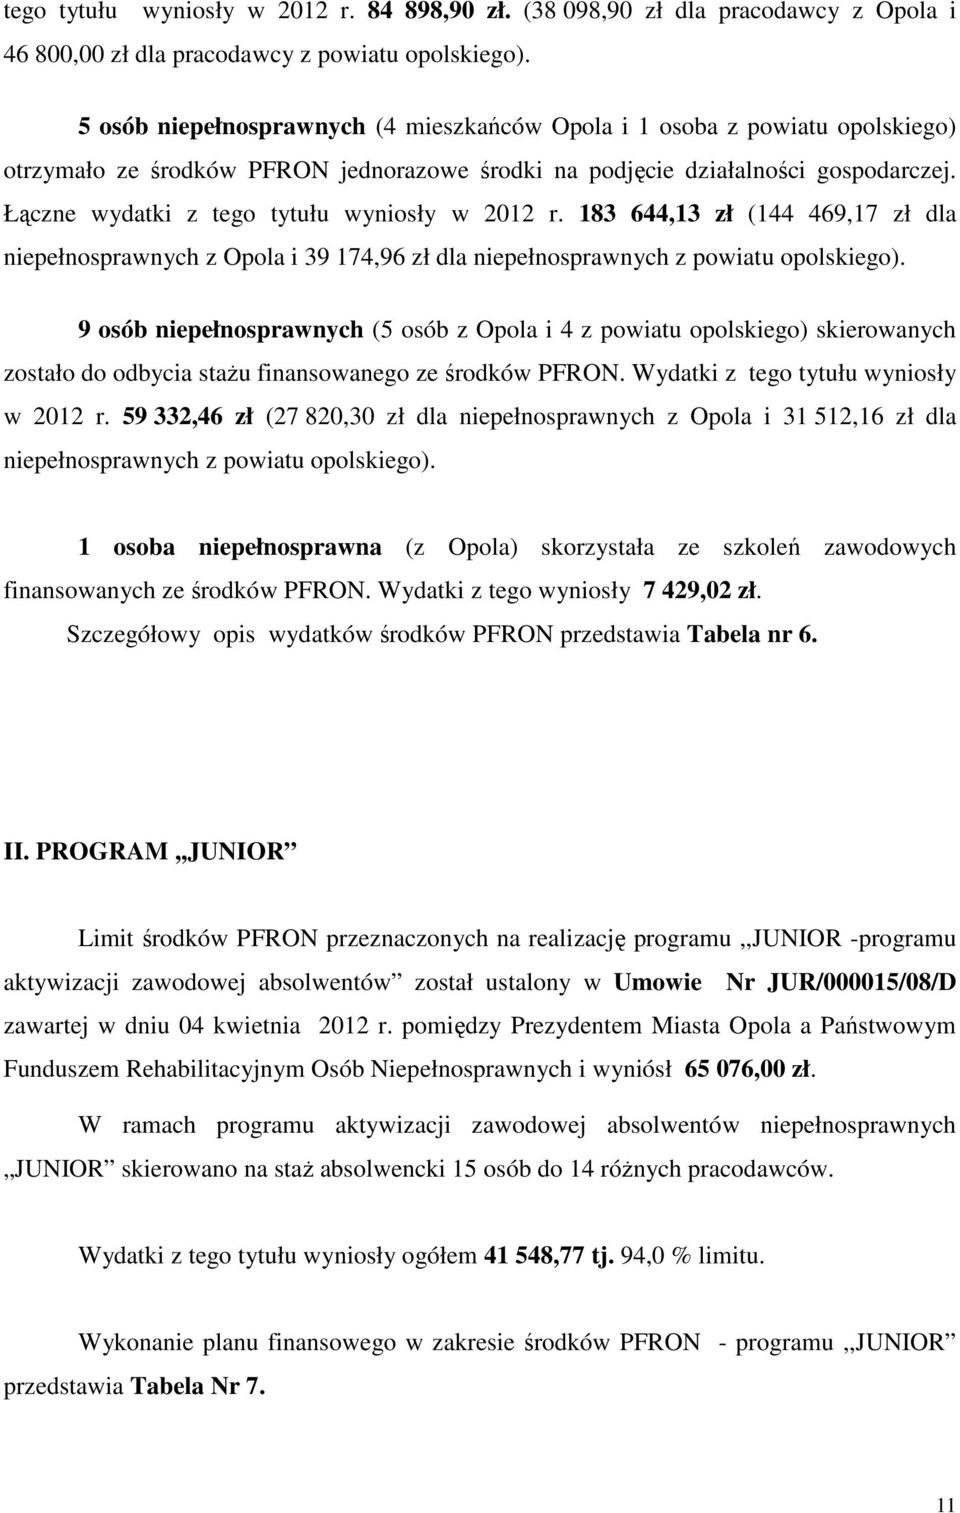 Łączne wydatki z tego tytułu wyniosły w 2012 r. 183 644,13 zł (144 469,17 zł dla niepełnosprawnych z Opola i 39 174,96 zł dla niepełnosprawnych z powiatu opolskiego).